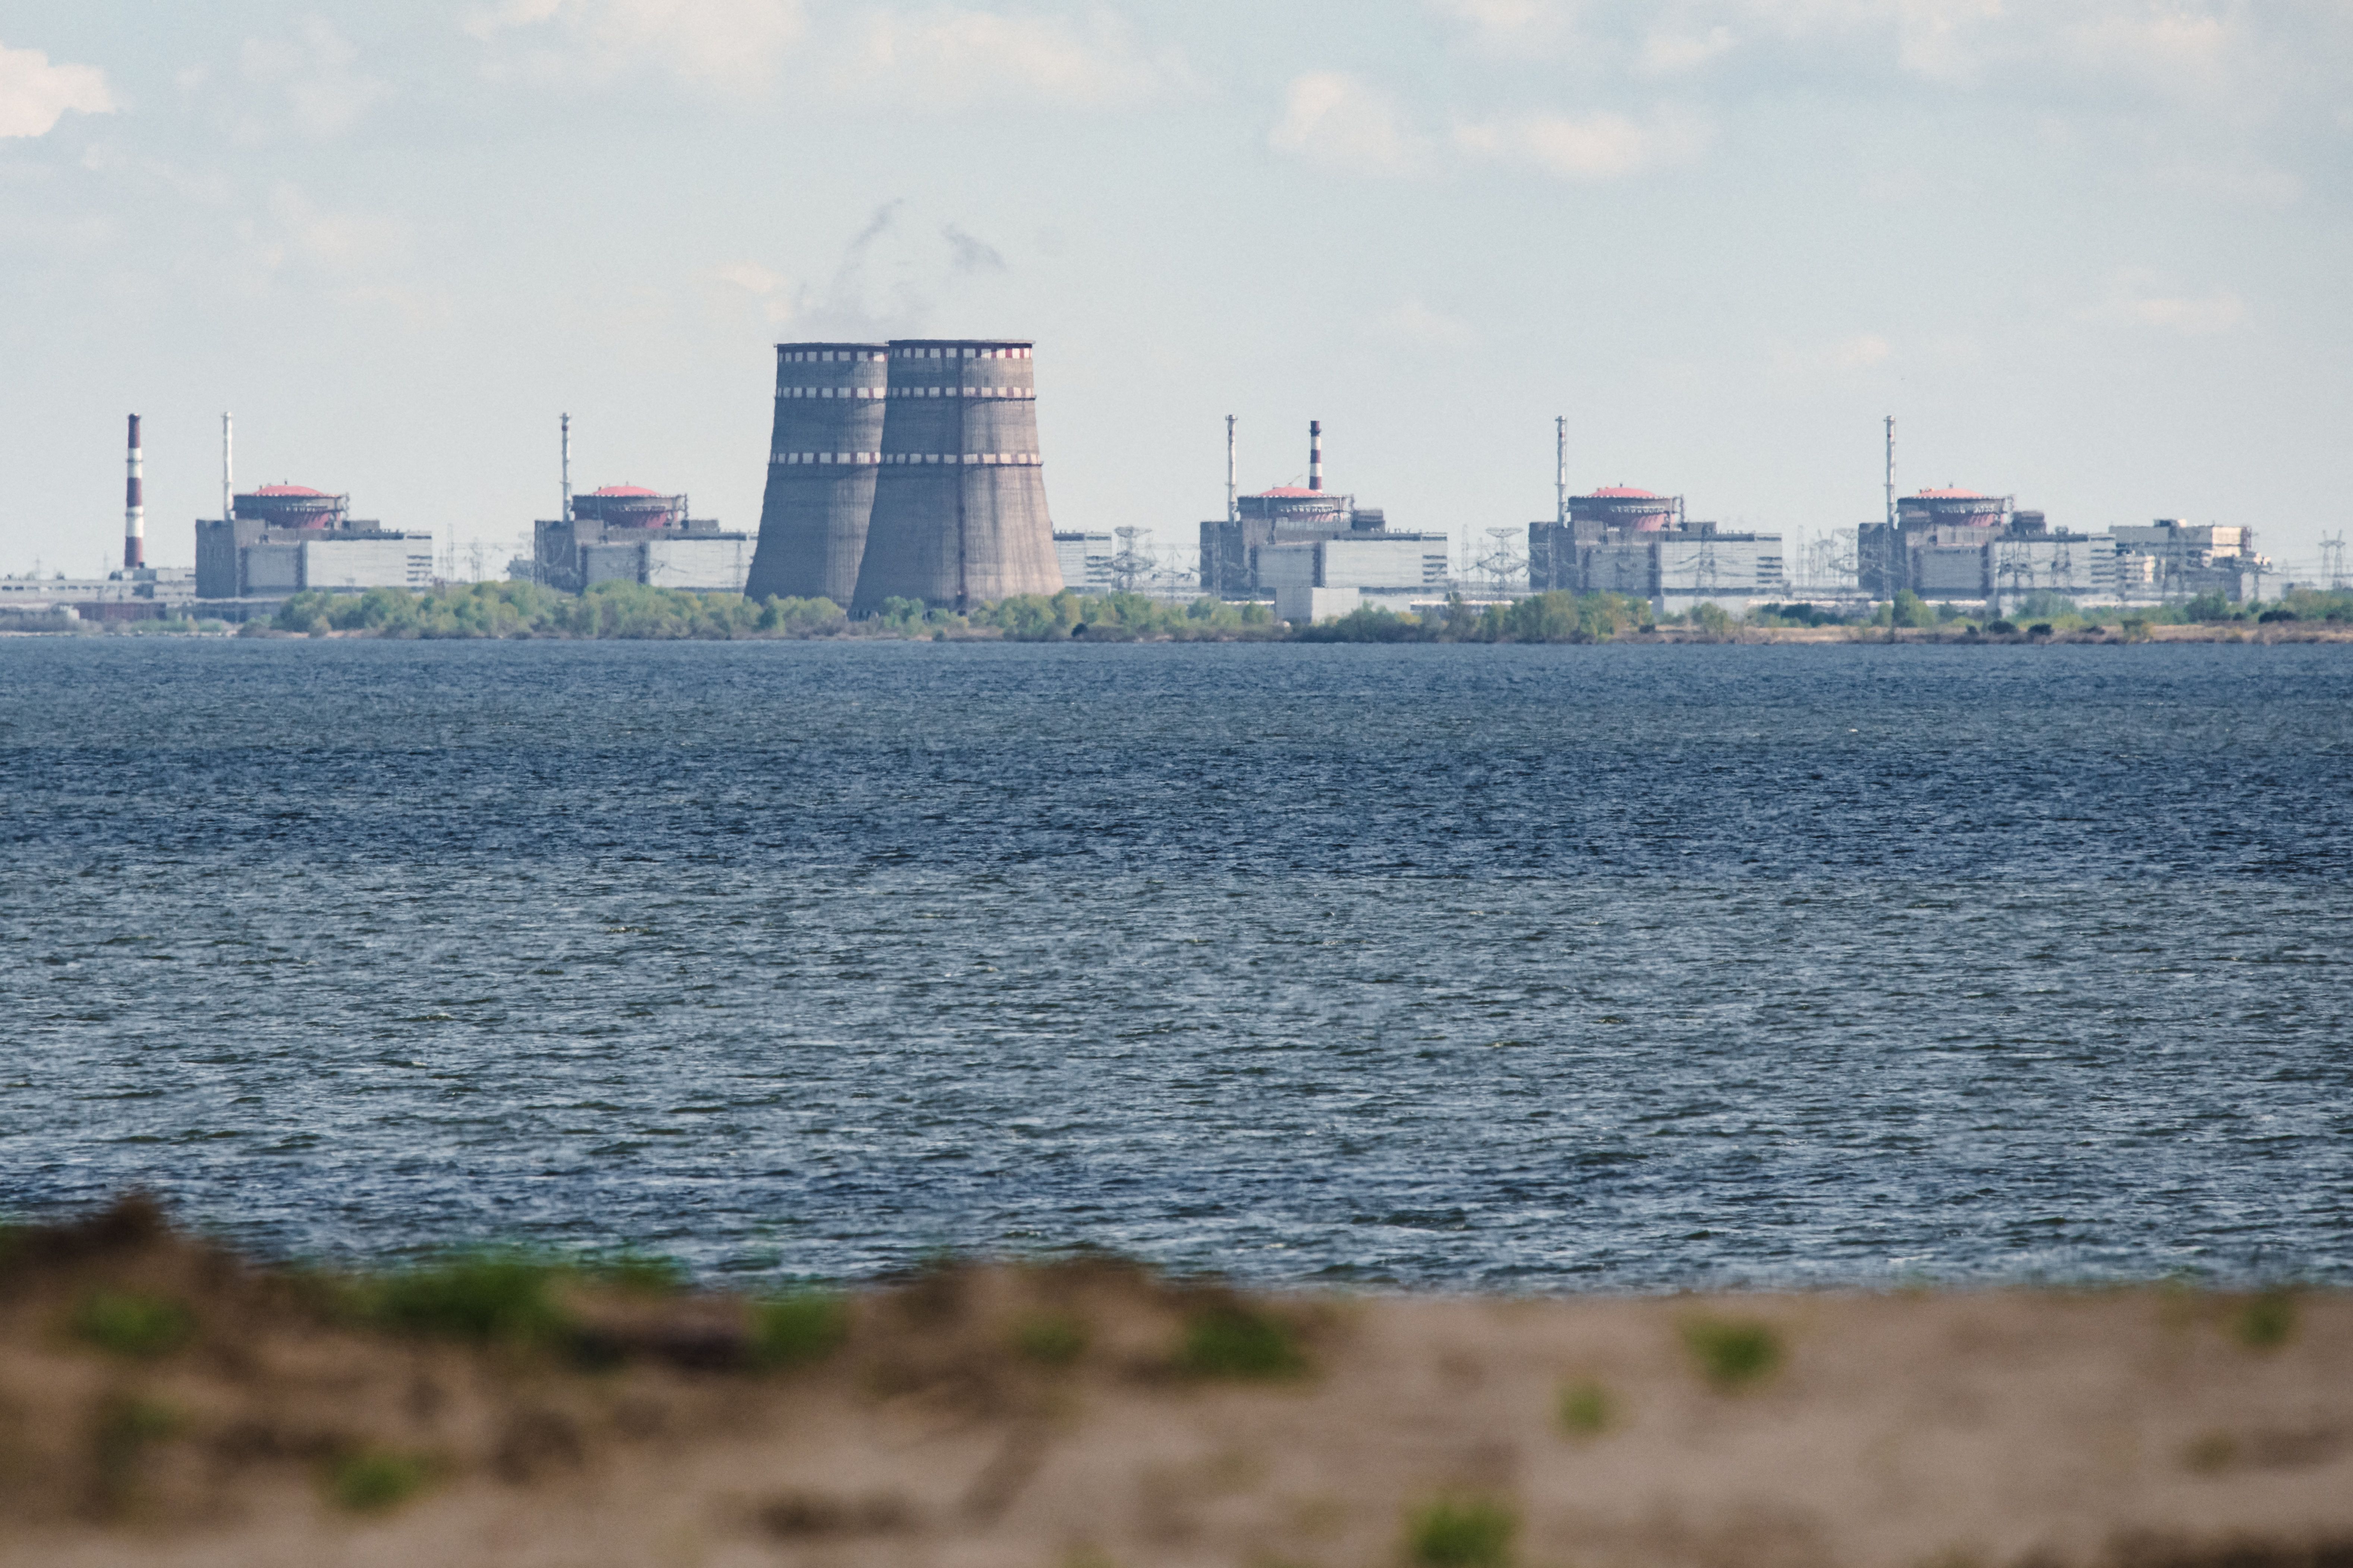 Una vista general muestra la planta de energía nuclear de Zaporizhzhia, situada en el área de Enerhodar controlada por Rusia, vista desde Nikopol el 27 de abril de 2022.